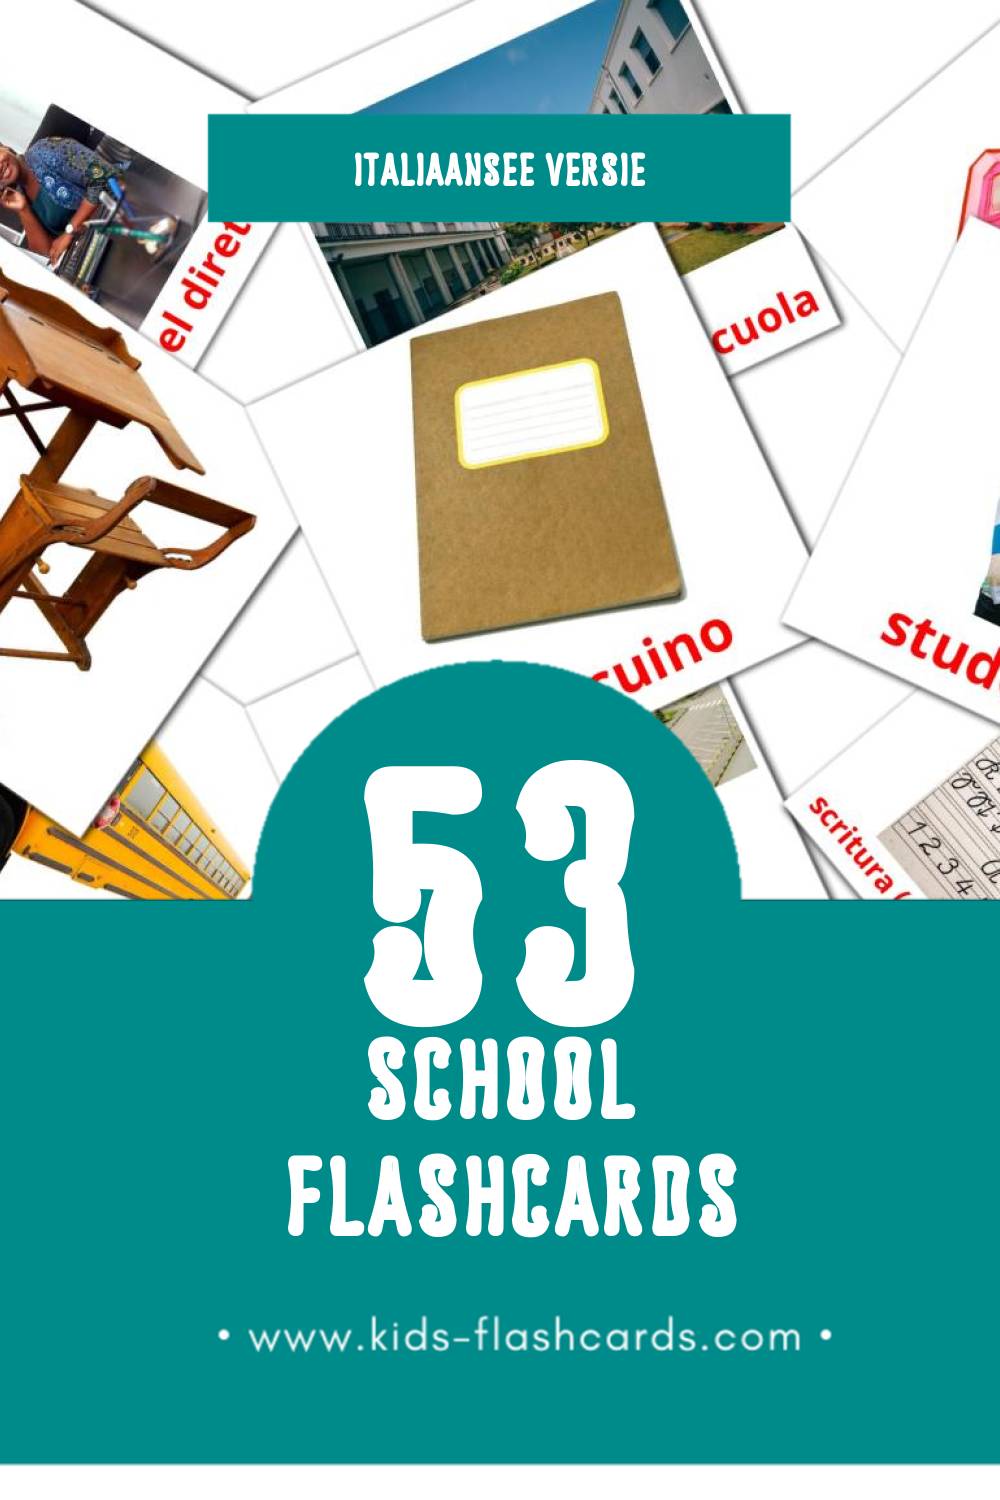 Visuele Scuola Flashcards voor Kleuters (53 kaarten in het Italiaanse)